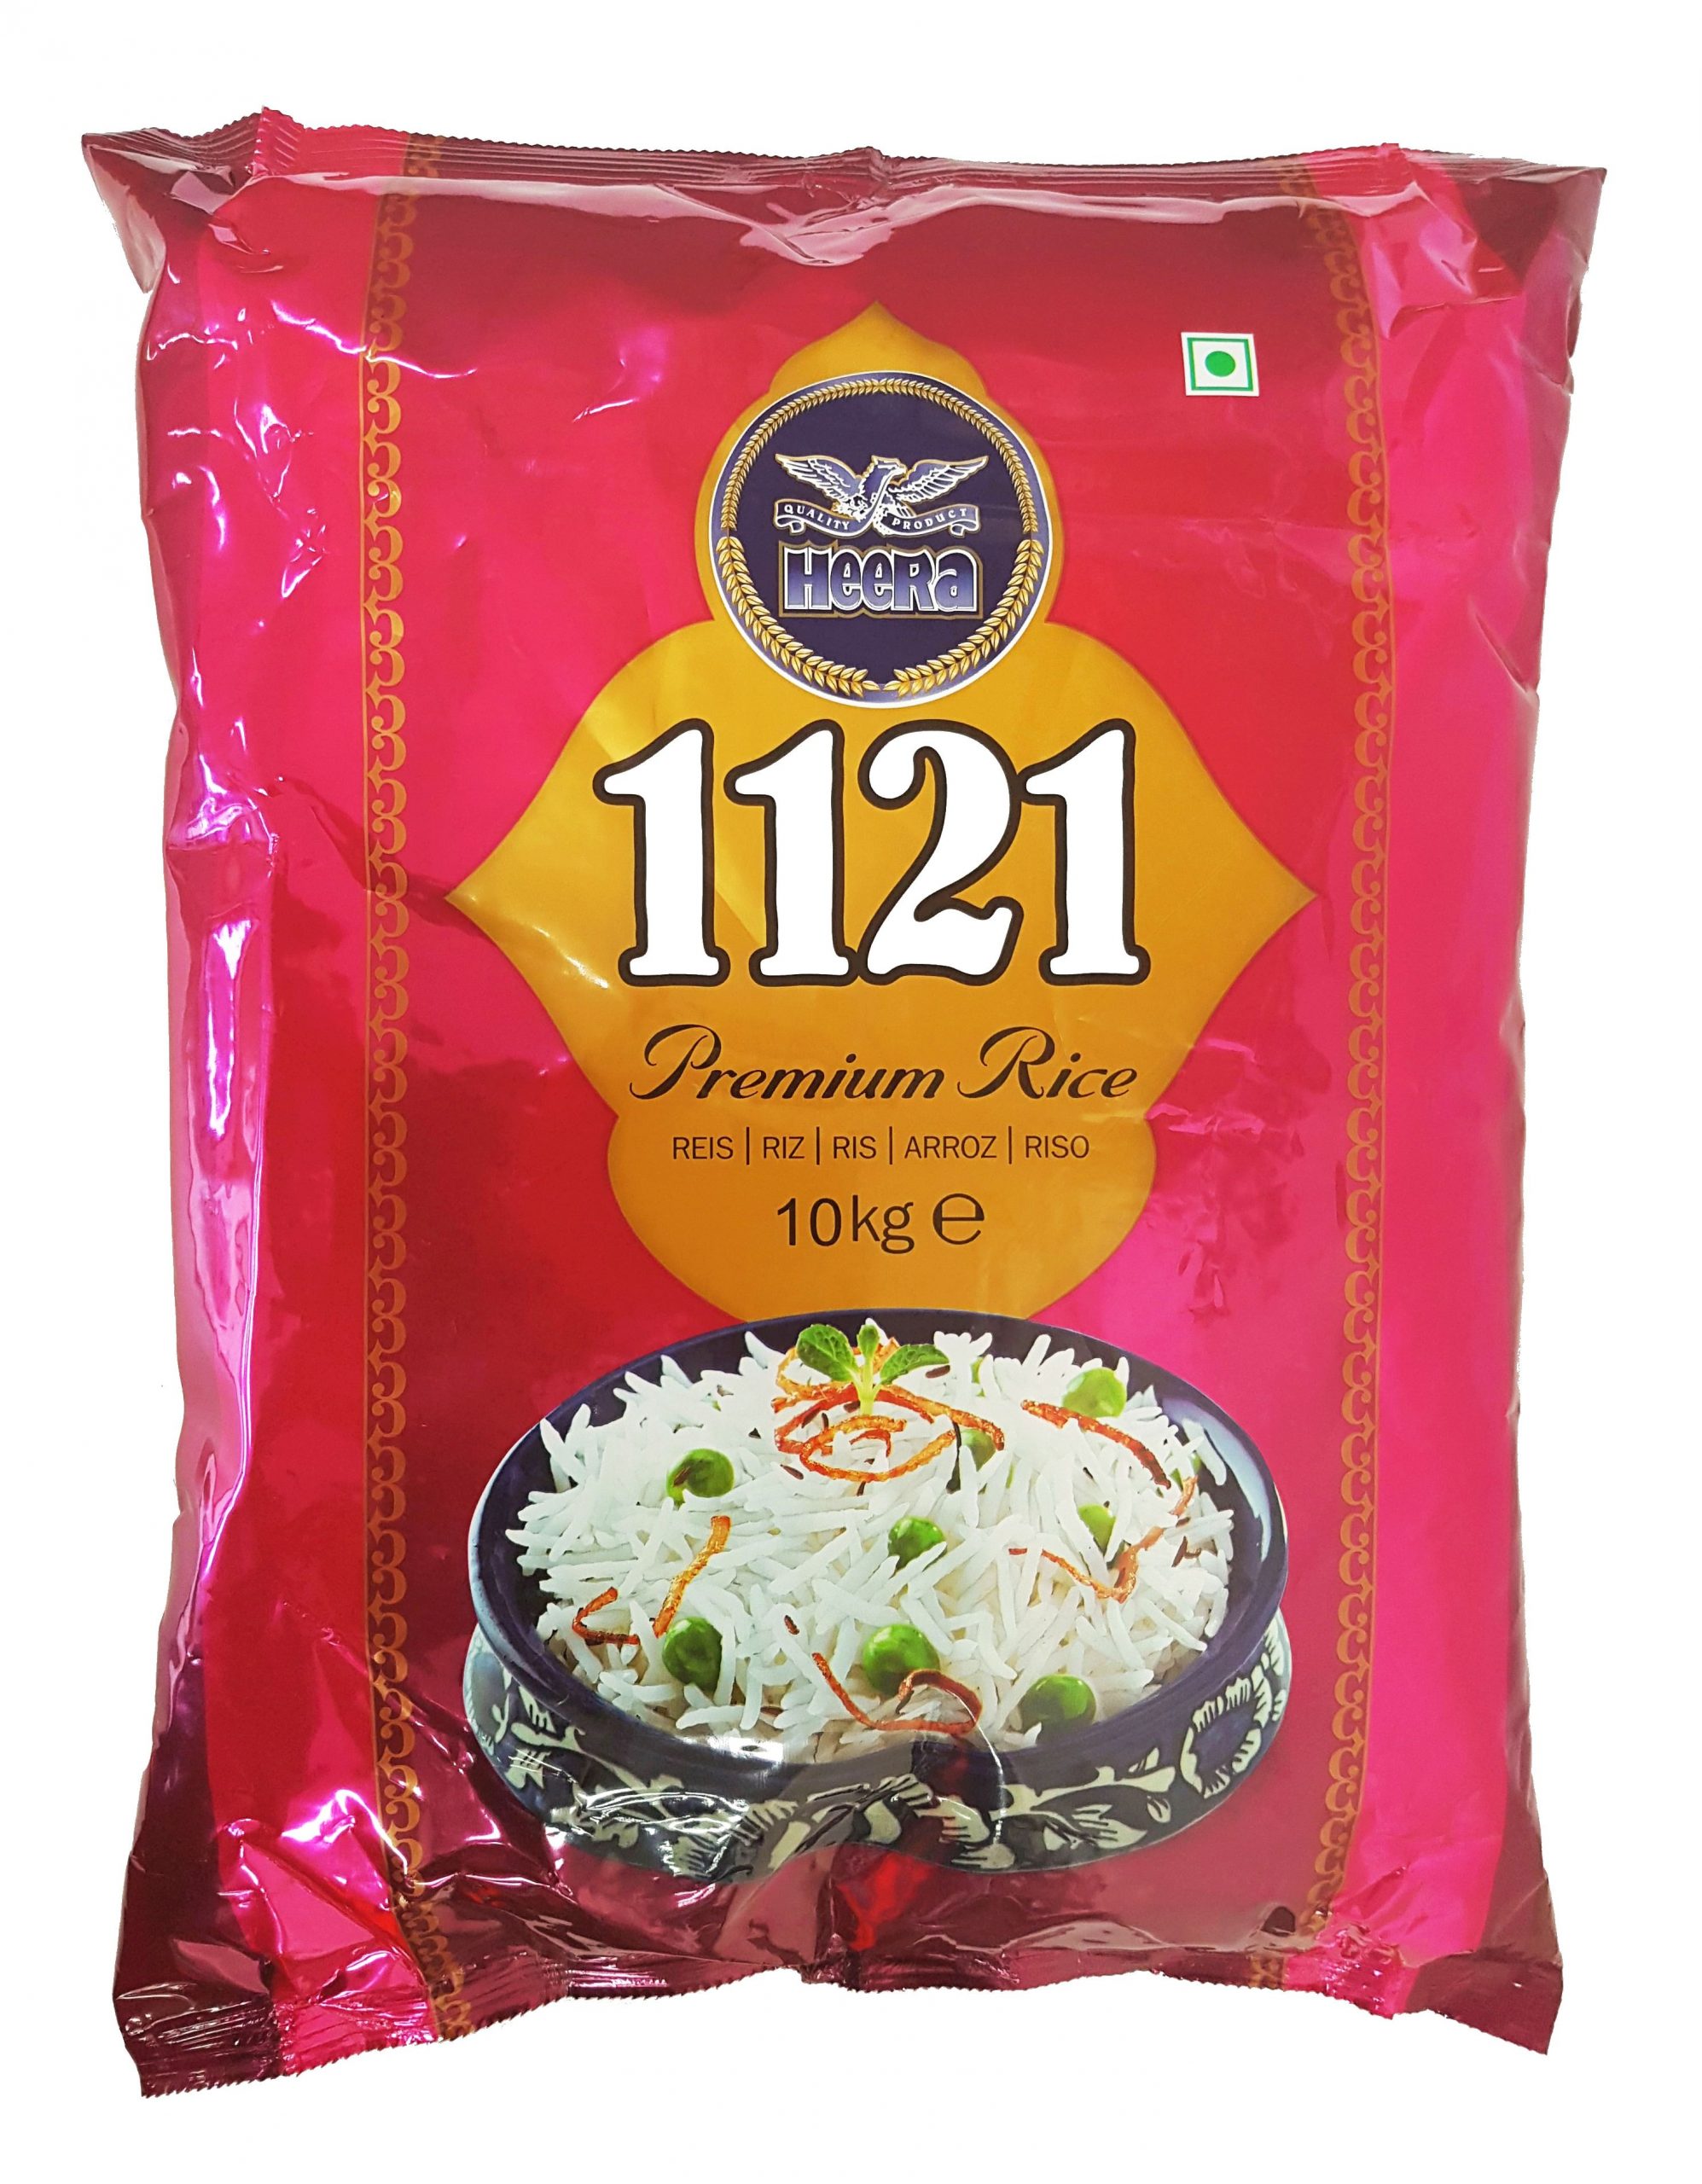 Heera 1121 Premium Rice 10kg Rashan Pani